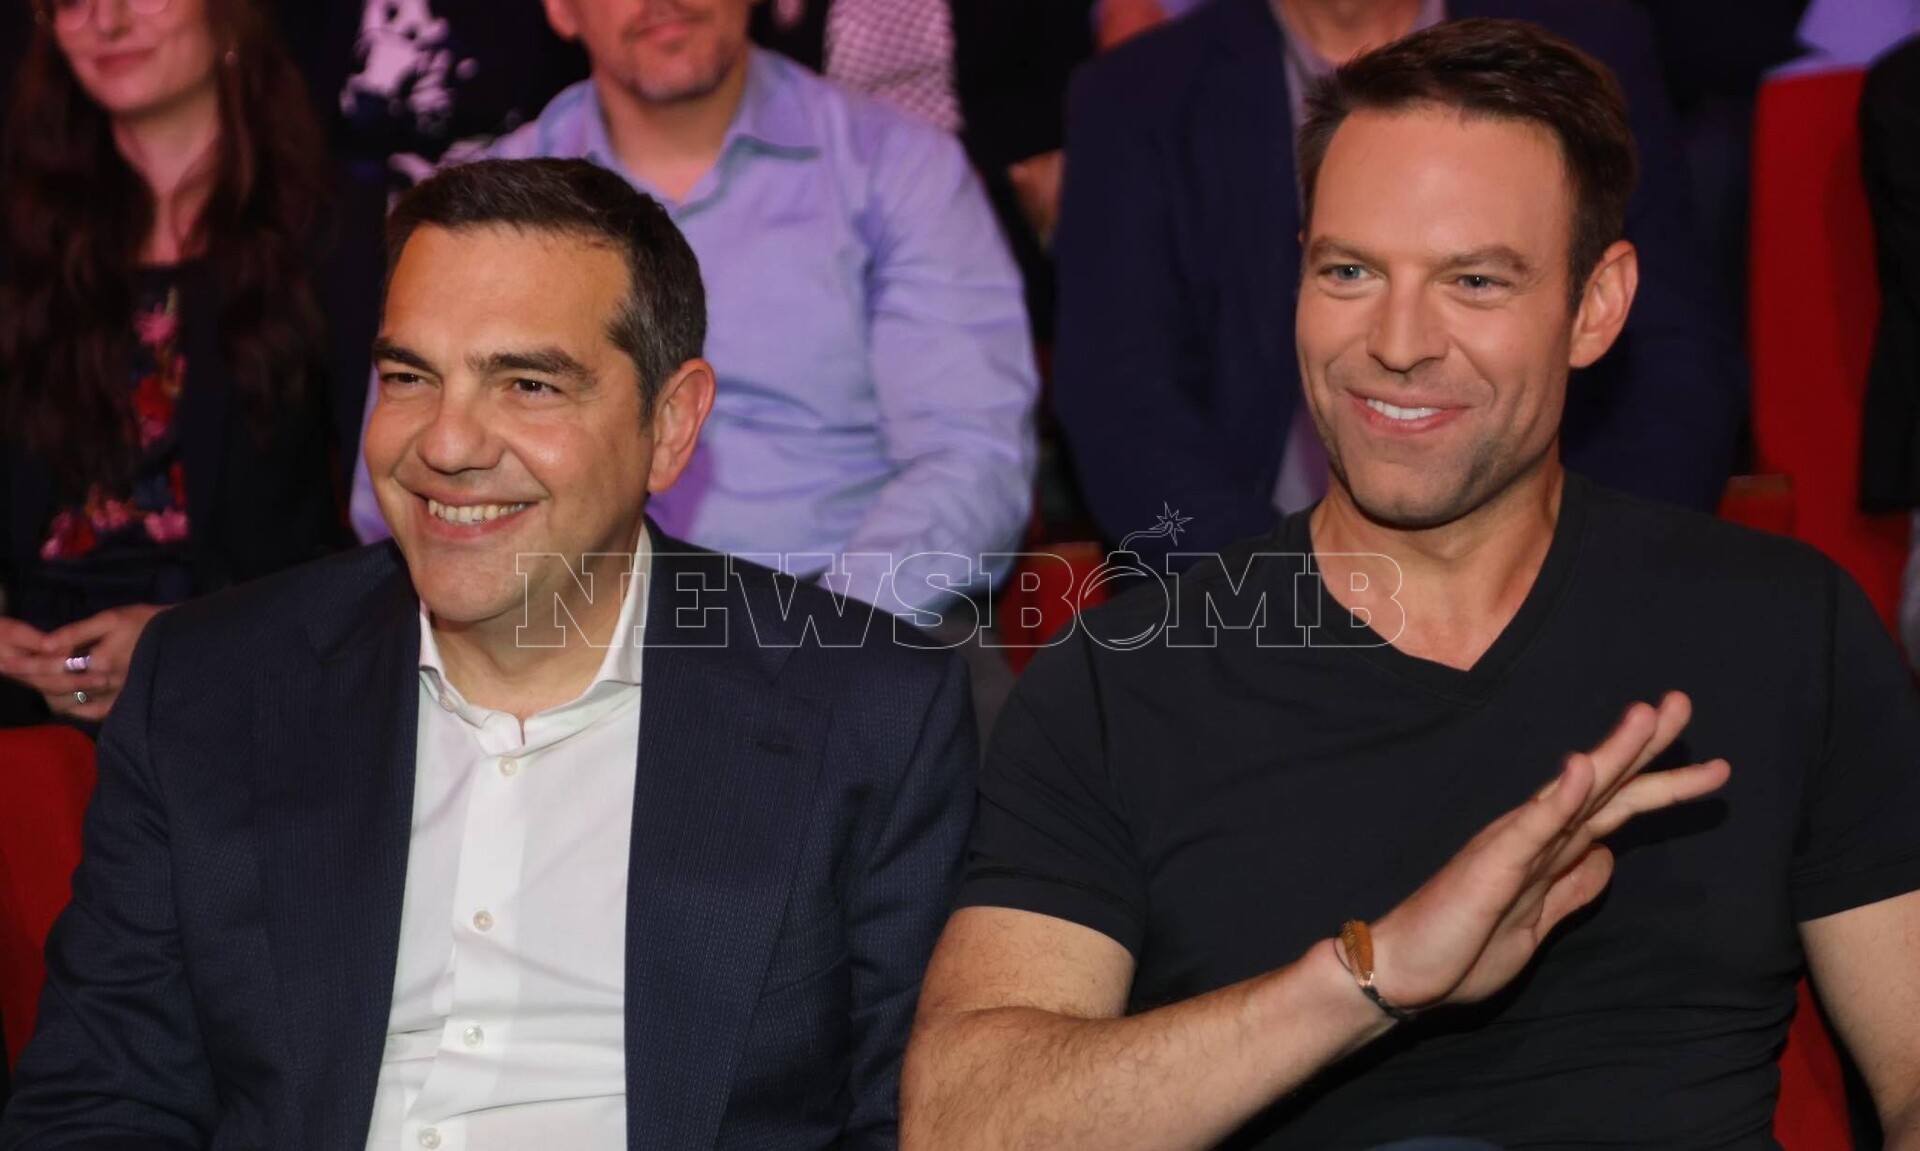 ΣΥΡΙΖΑ: Δίπλα – δίπλα Τσίπρας και Κασσελάκης στην παρουσίαση του ευρωψηφοδελτίου [vid,pics]